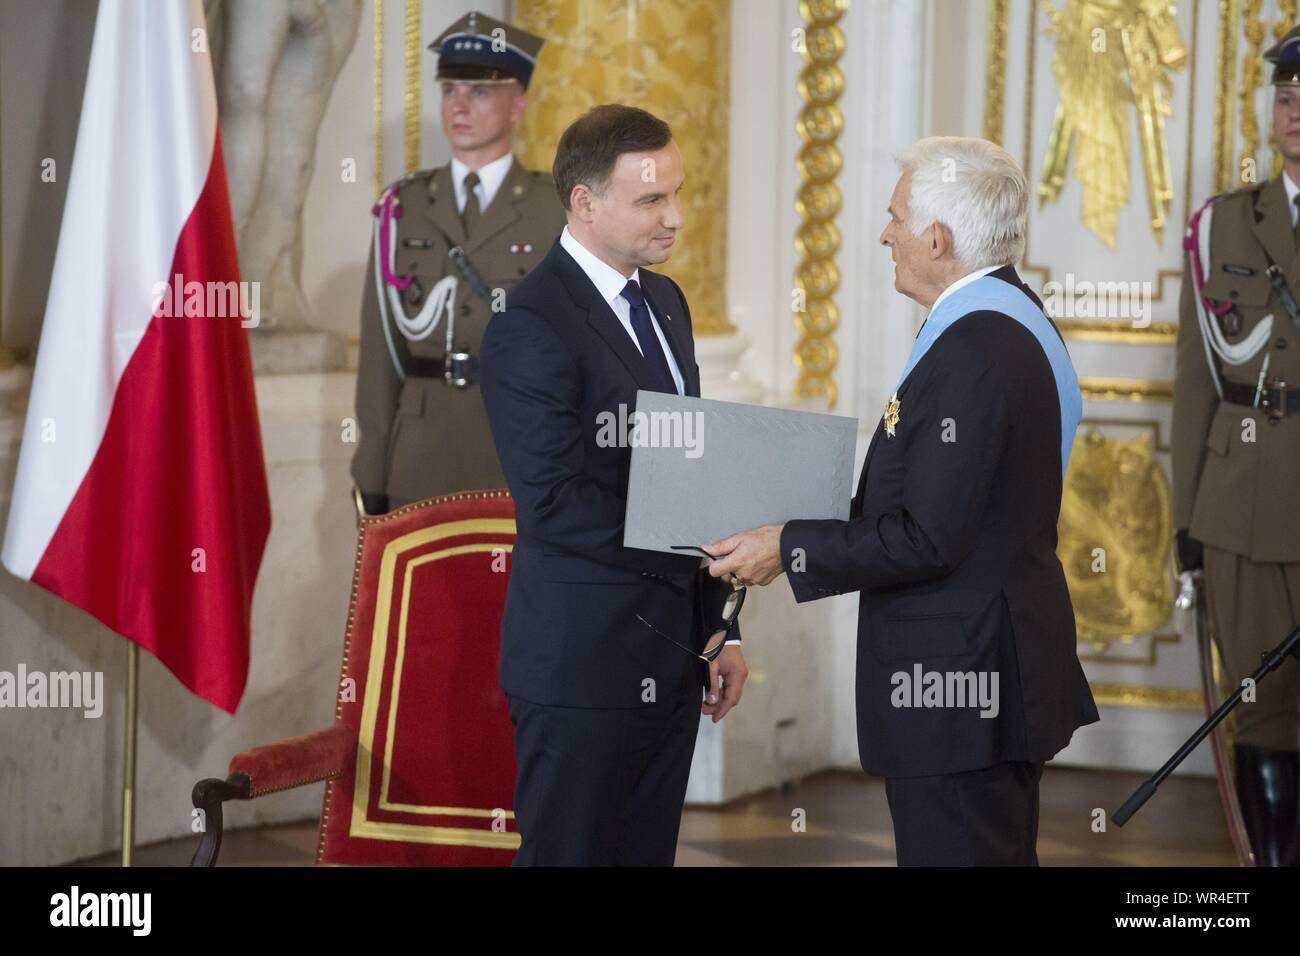 Le 6 août 2015, Varsovie, l'inauguration présidentielle en Pologne : Andrzej Duda prêté serment en tant que nouveau président polonais. Recevoir les insignes d'ordres au Royal Banque D'Images